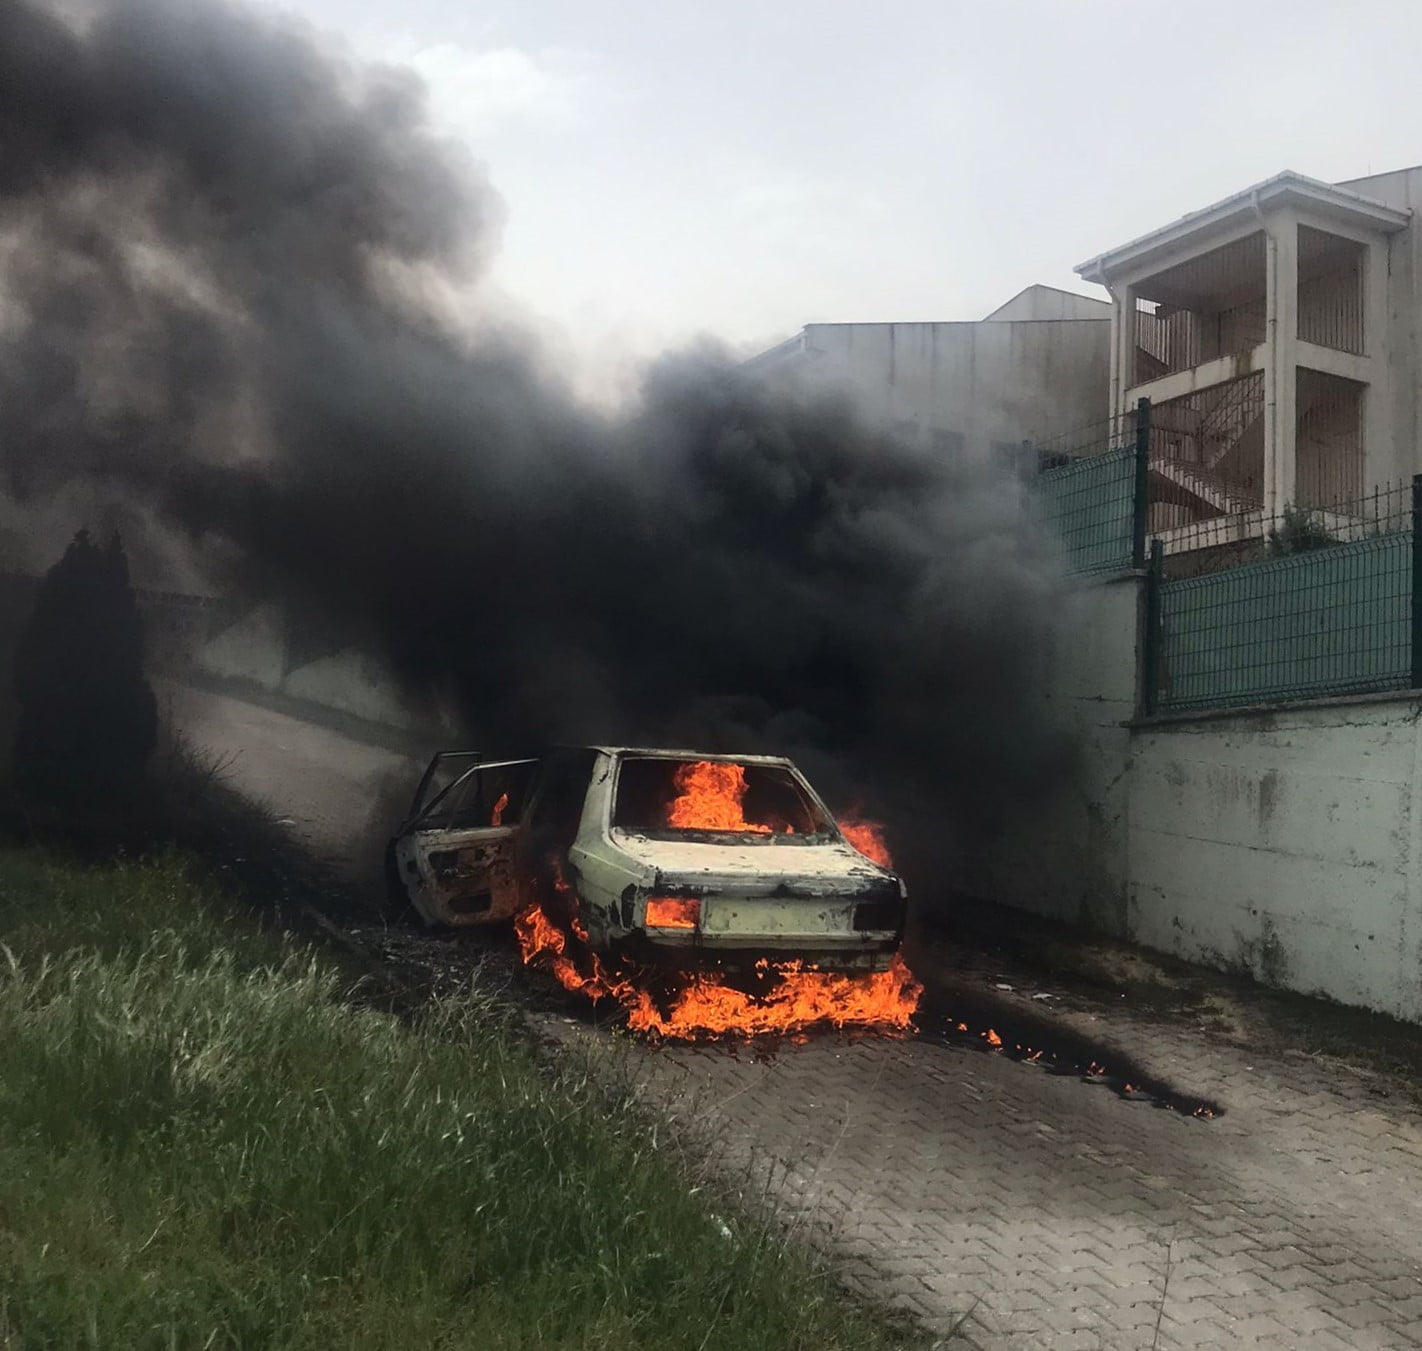 Alev alev yanan otomobil hurda yığınına döndü